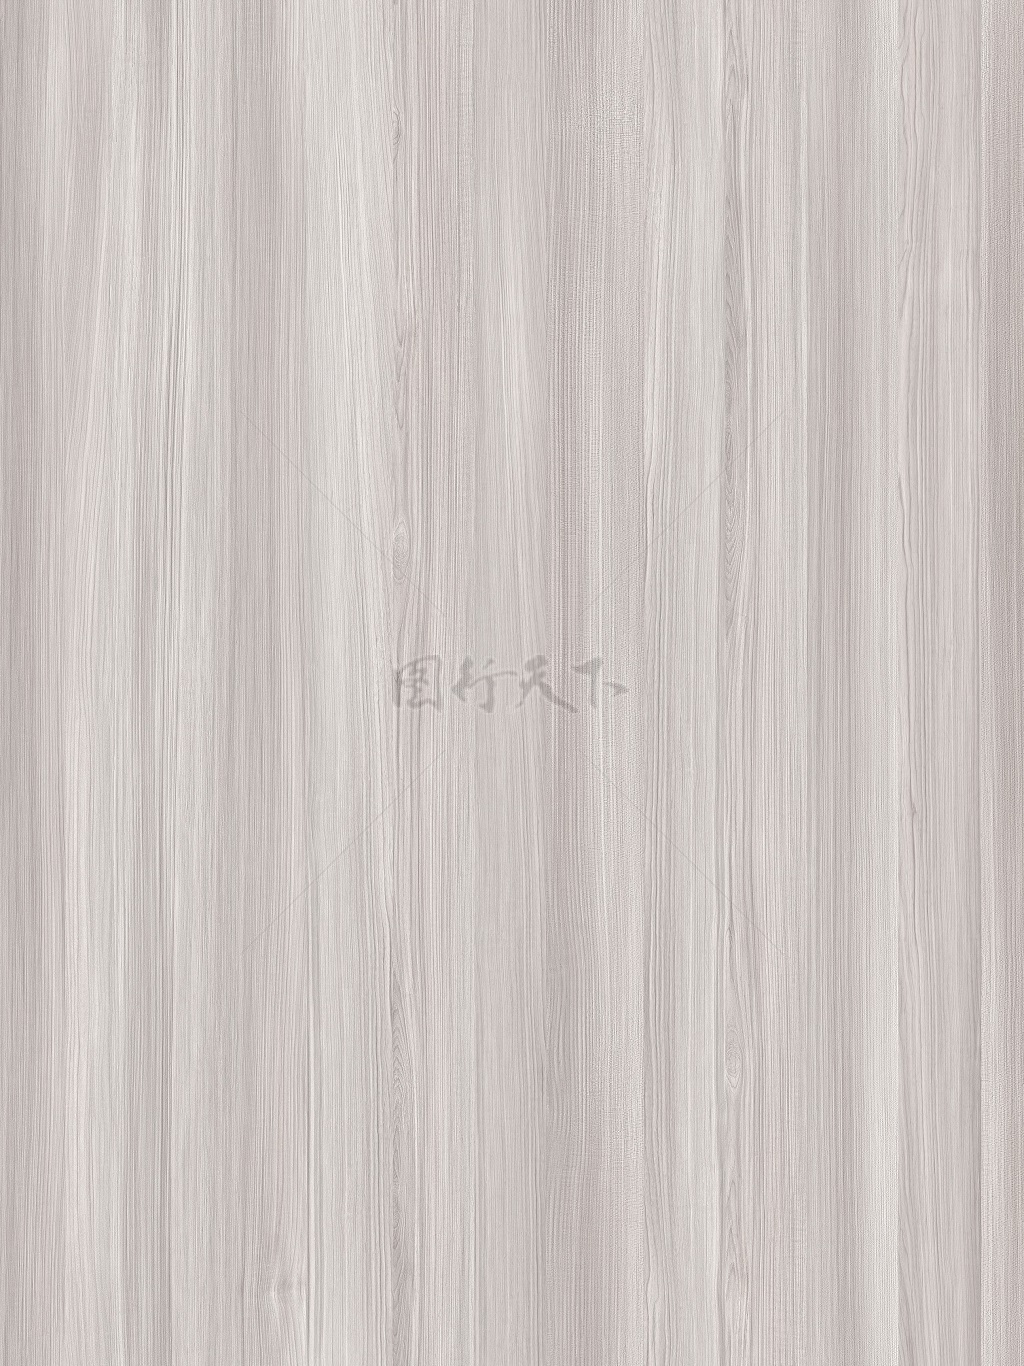  橡木大幅木纹纹理背景图案贴图白木纹